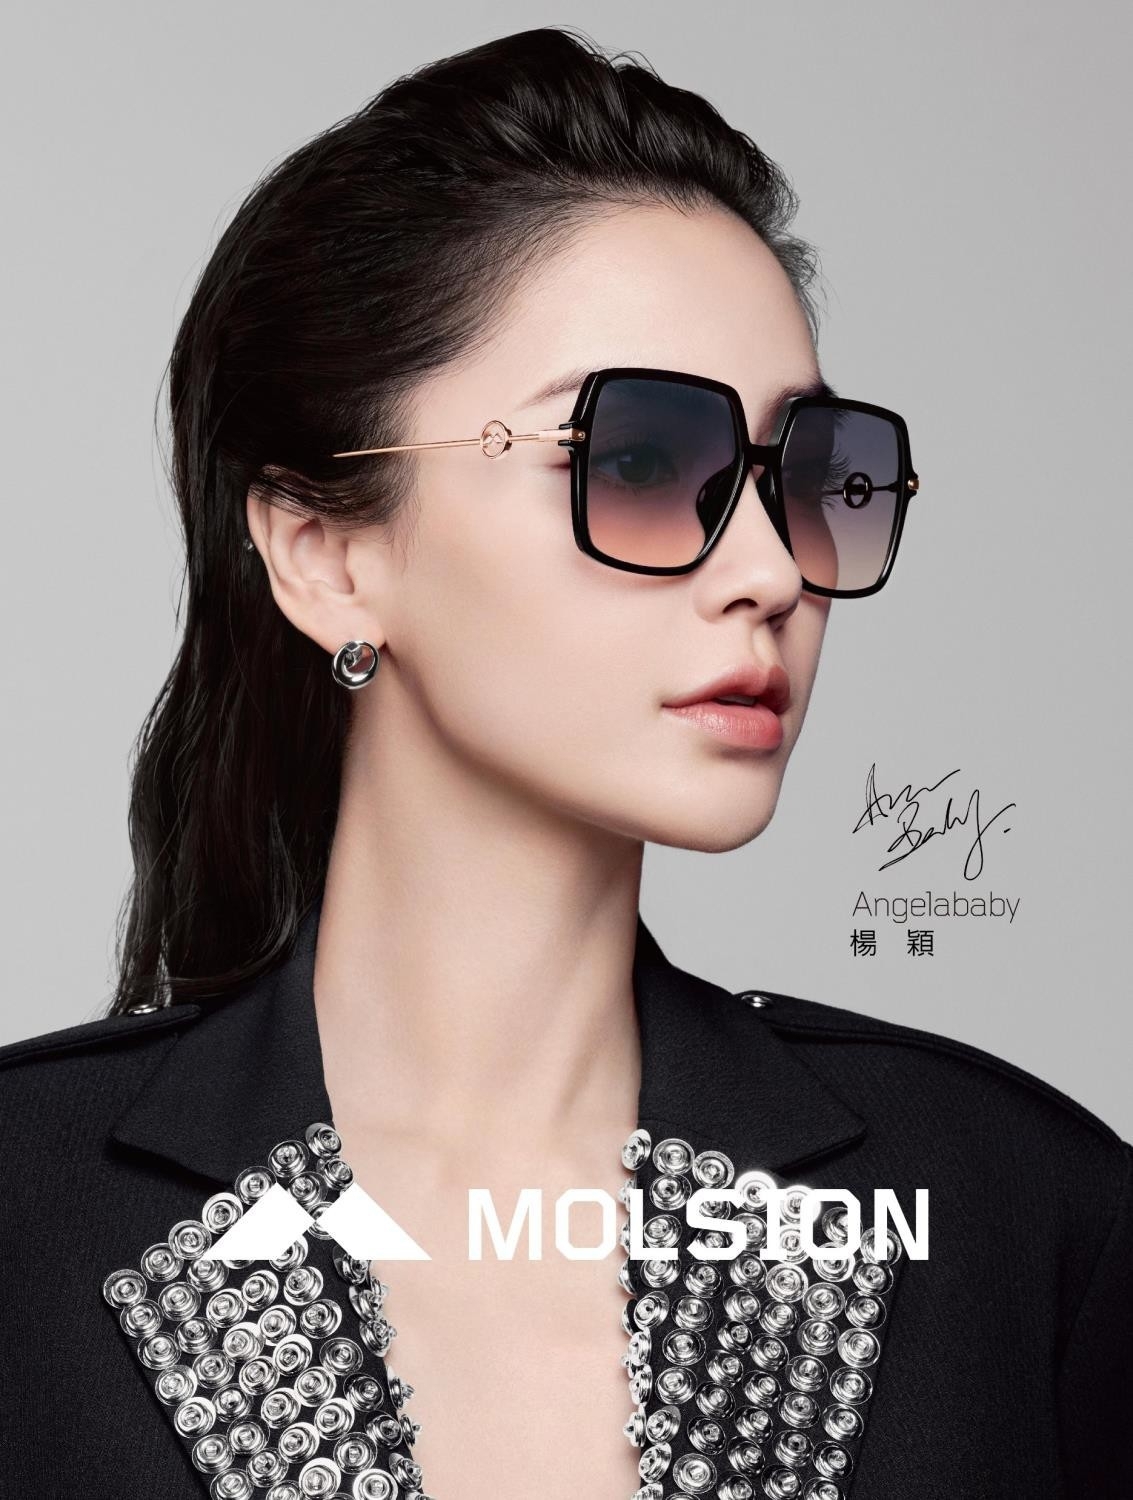 MOLSION 眼鏡 MJ7108 B30 (玫瑰金) 曲線切邊方框 眼鏡品牌 - 鏡在眼前-O2O配眼鏡美瞳整合平台